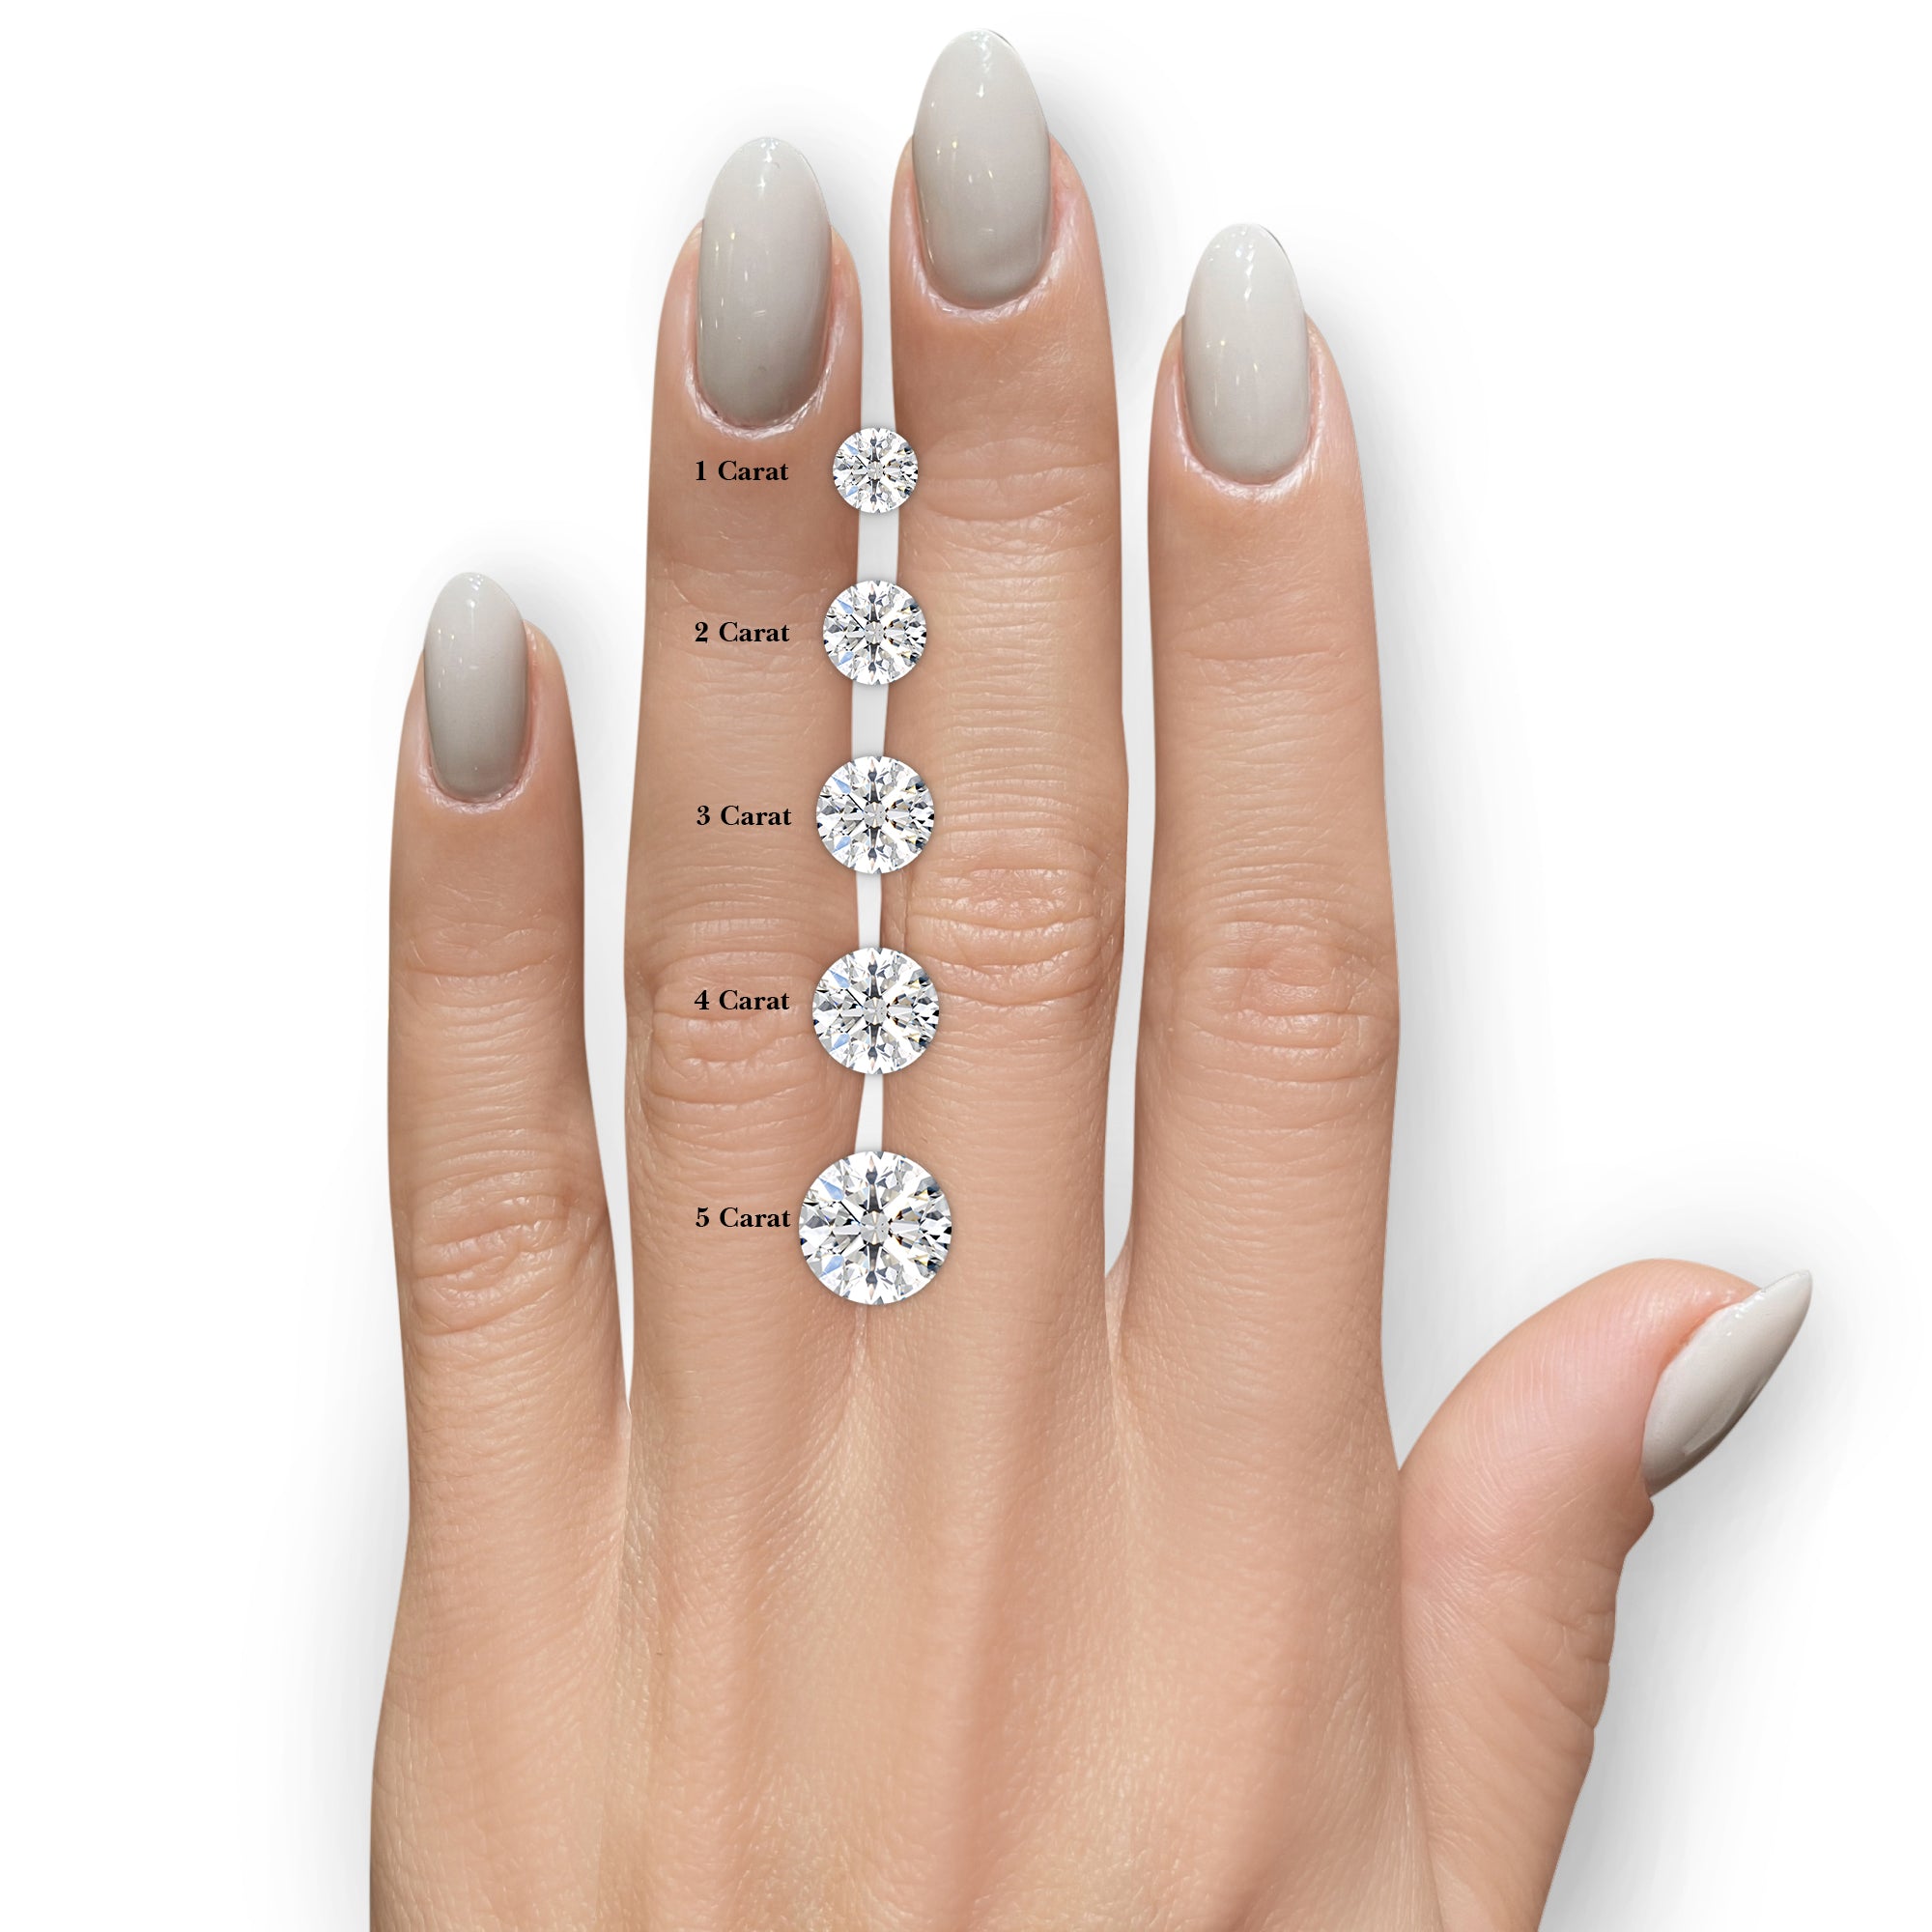 Stacy Moissanite & Diamonds Ring -14K White Gold